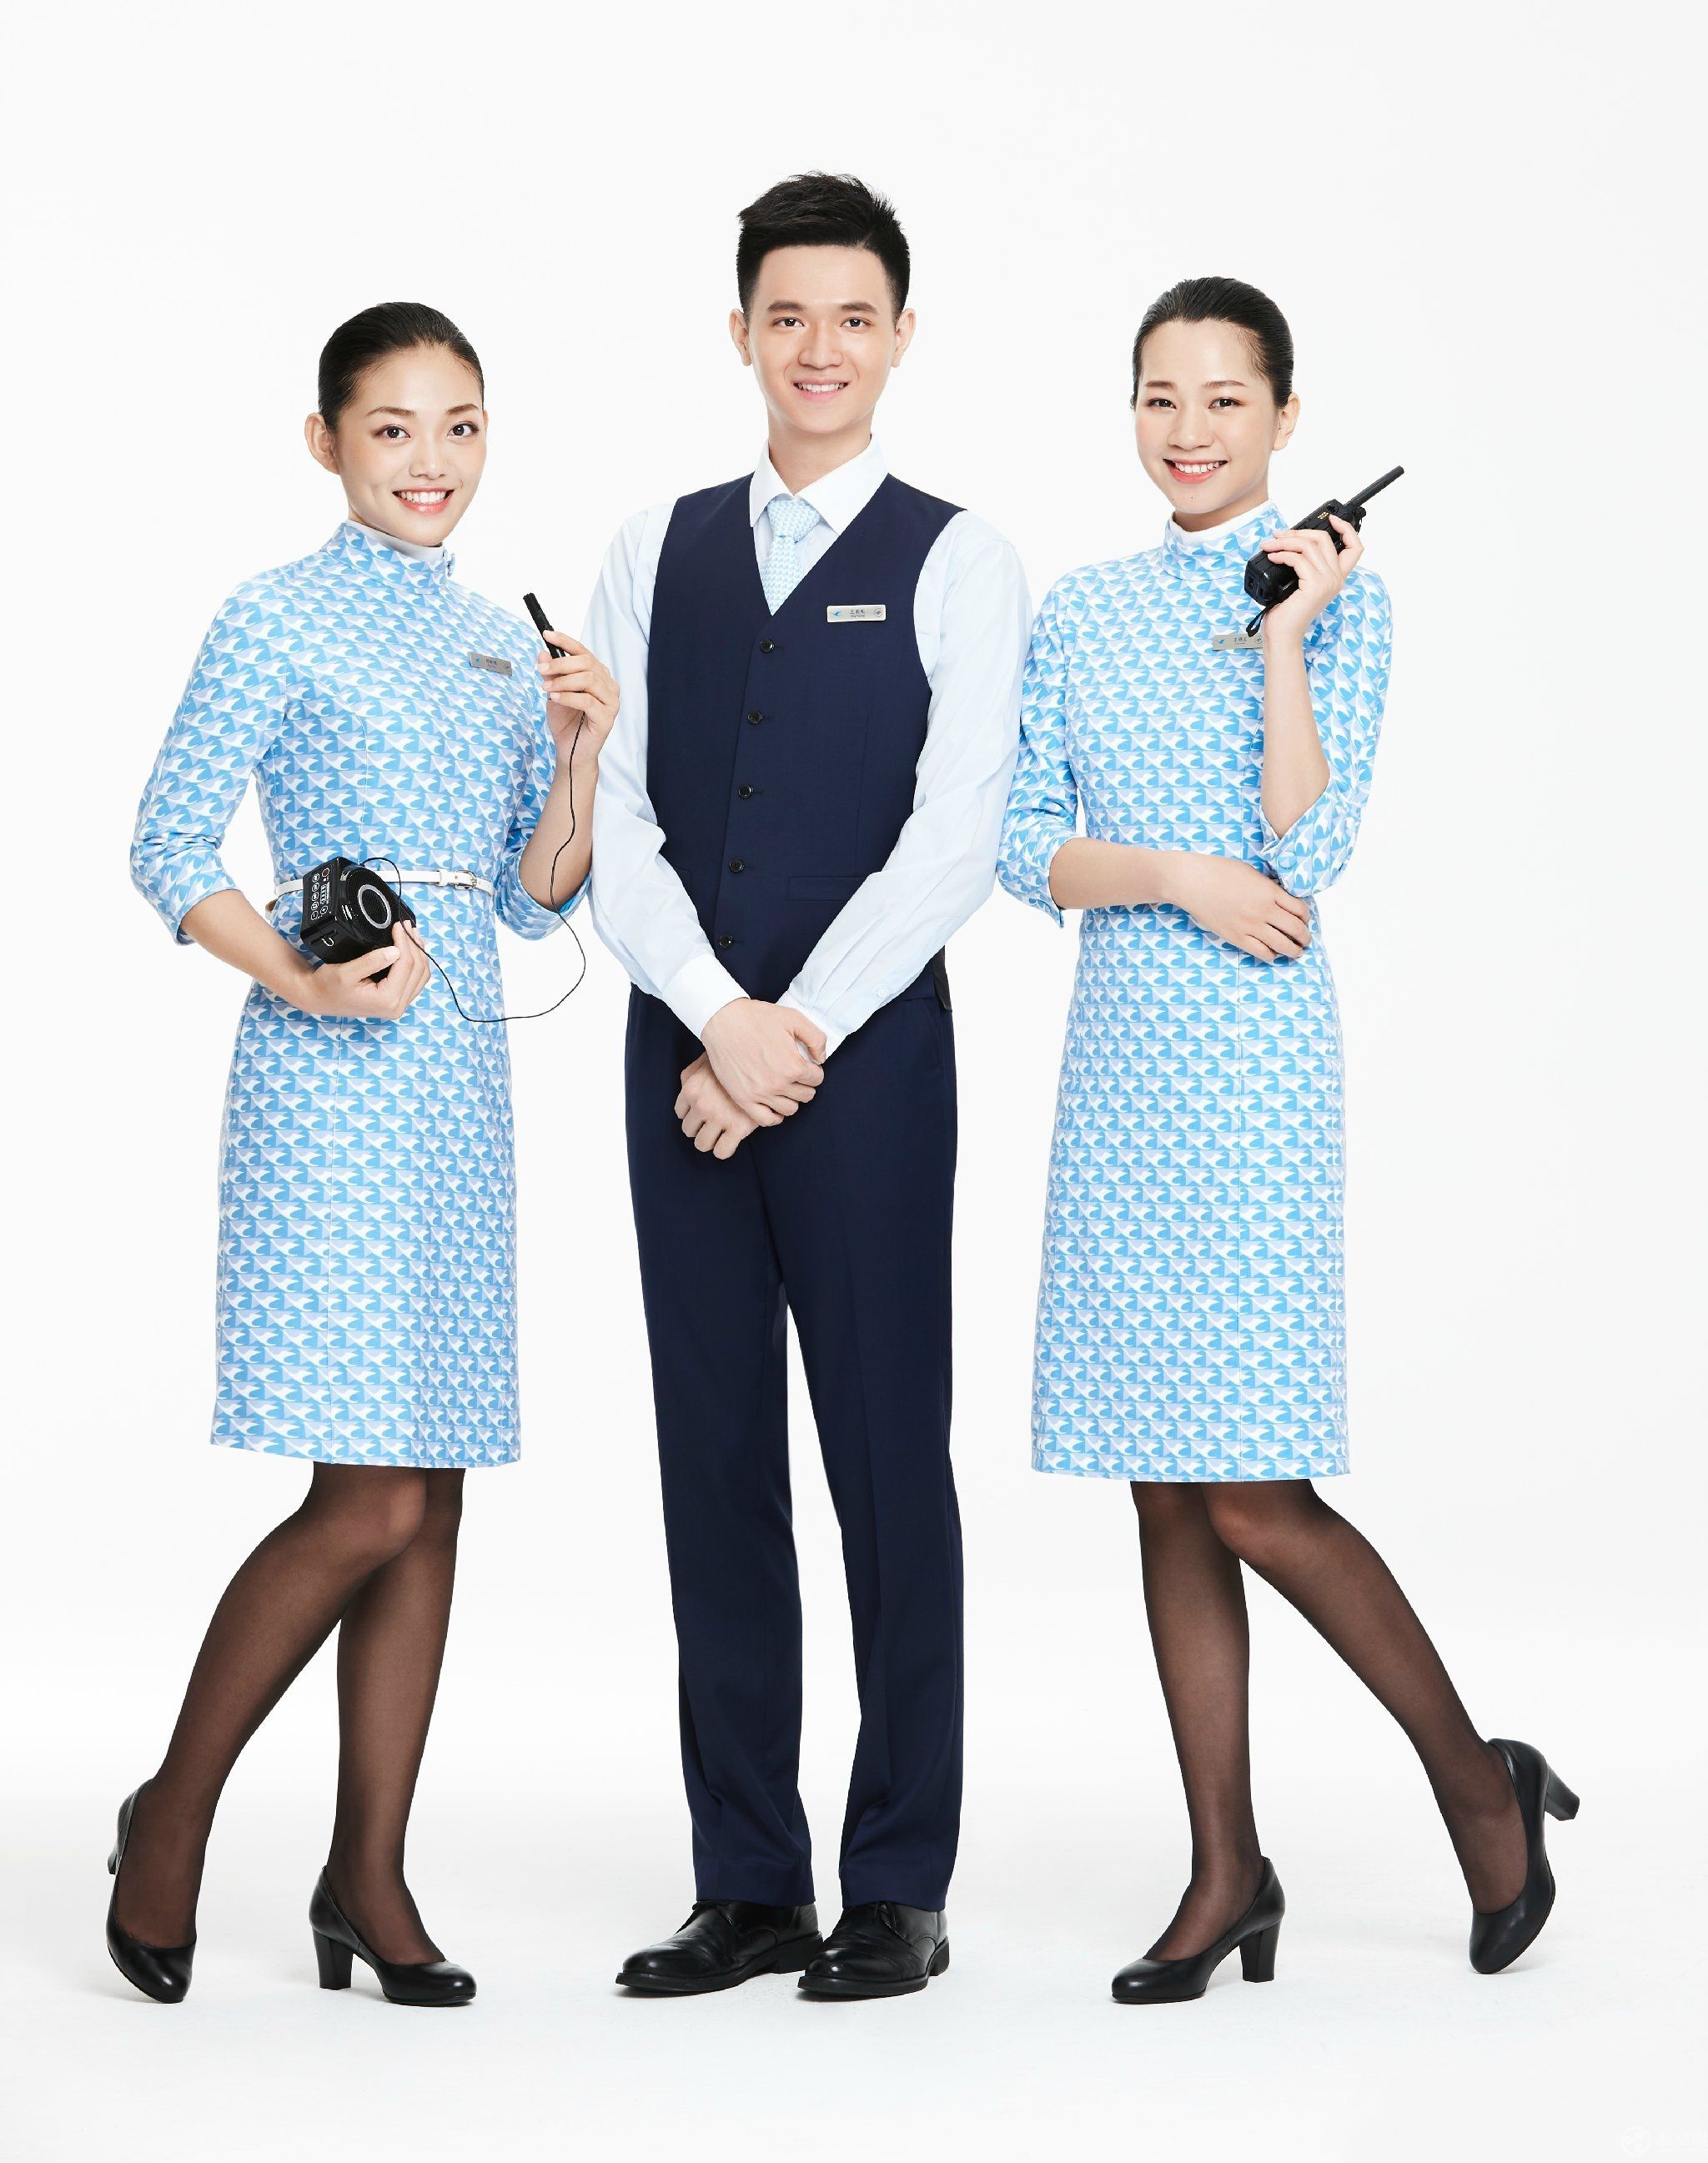 东航江西分公司乘务员在高空为旅客庆生 - 民用航空网